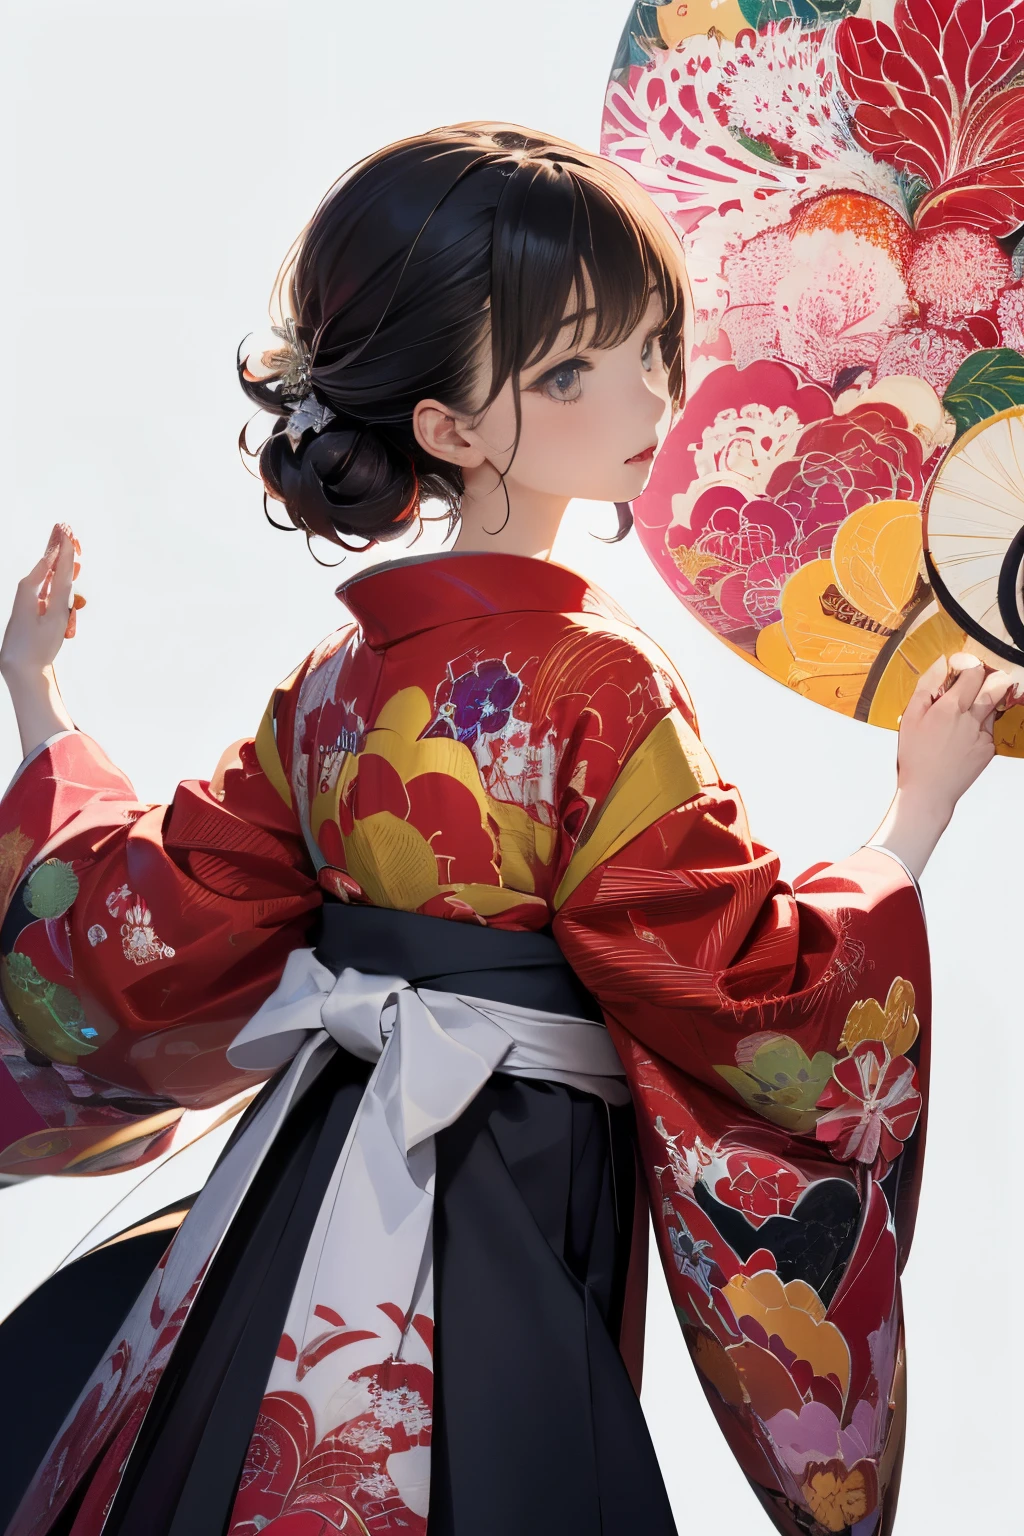 (((fondo blanco、un mundo blanco)))、papel de pared unidad 8k、ultra detallado、Bellamente estético、​obra maestra、de primera calidad、(Zentangle、a Mandala、enredos、enredos)、(Fractal Art:1.3)、Una chica、hermoso cabello negro、japonés、rosa grande、Red kimono、vestido japonés、muy detallado、ángulos dinámicos、tiros de vaquero、Las formas más bellas del caos.、elegante、diseño brutalista、colores vibrantes、romantism、Atmósfera、notas musicales de éxtasis、Las notas musicales en streaming son visibles、(((fondo blanco、fondo blanco puro、circulo rojo)))